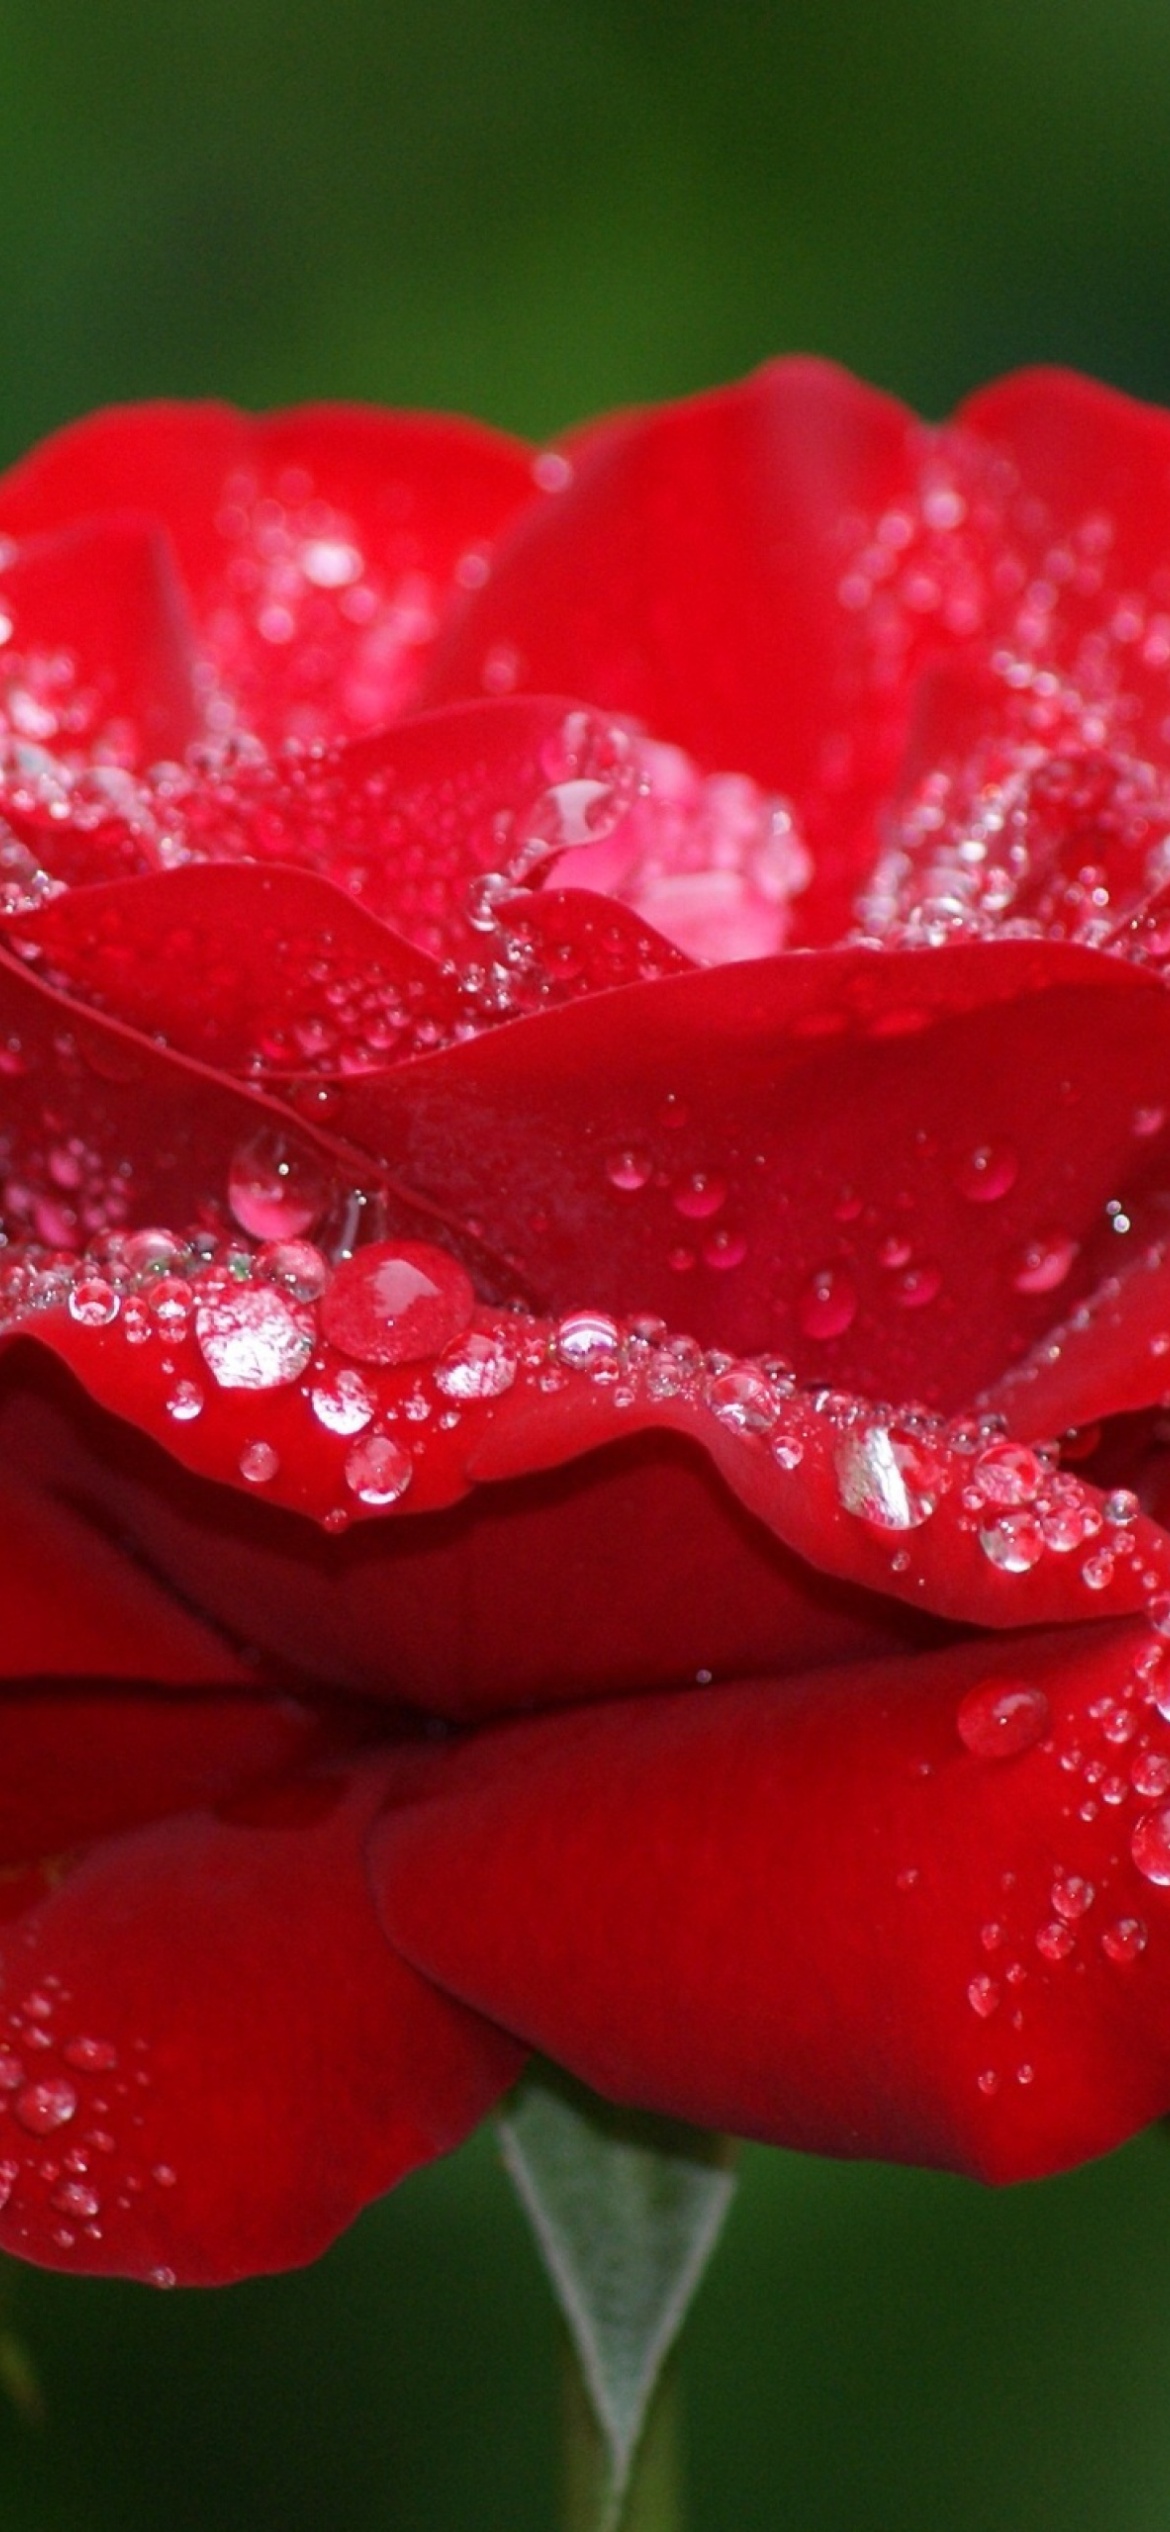 Dew Drops On Rose Petals wallpaper 1170x2532